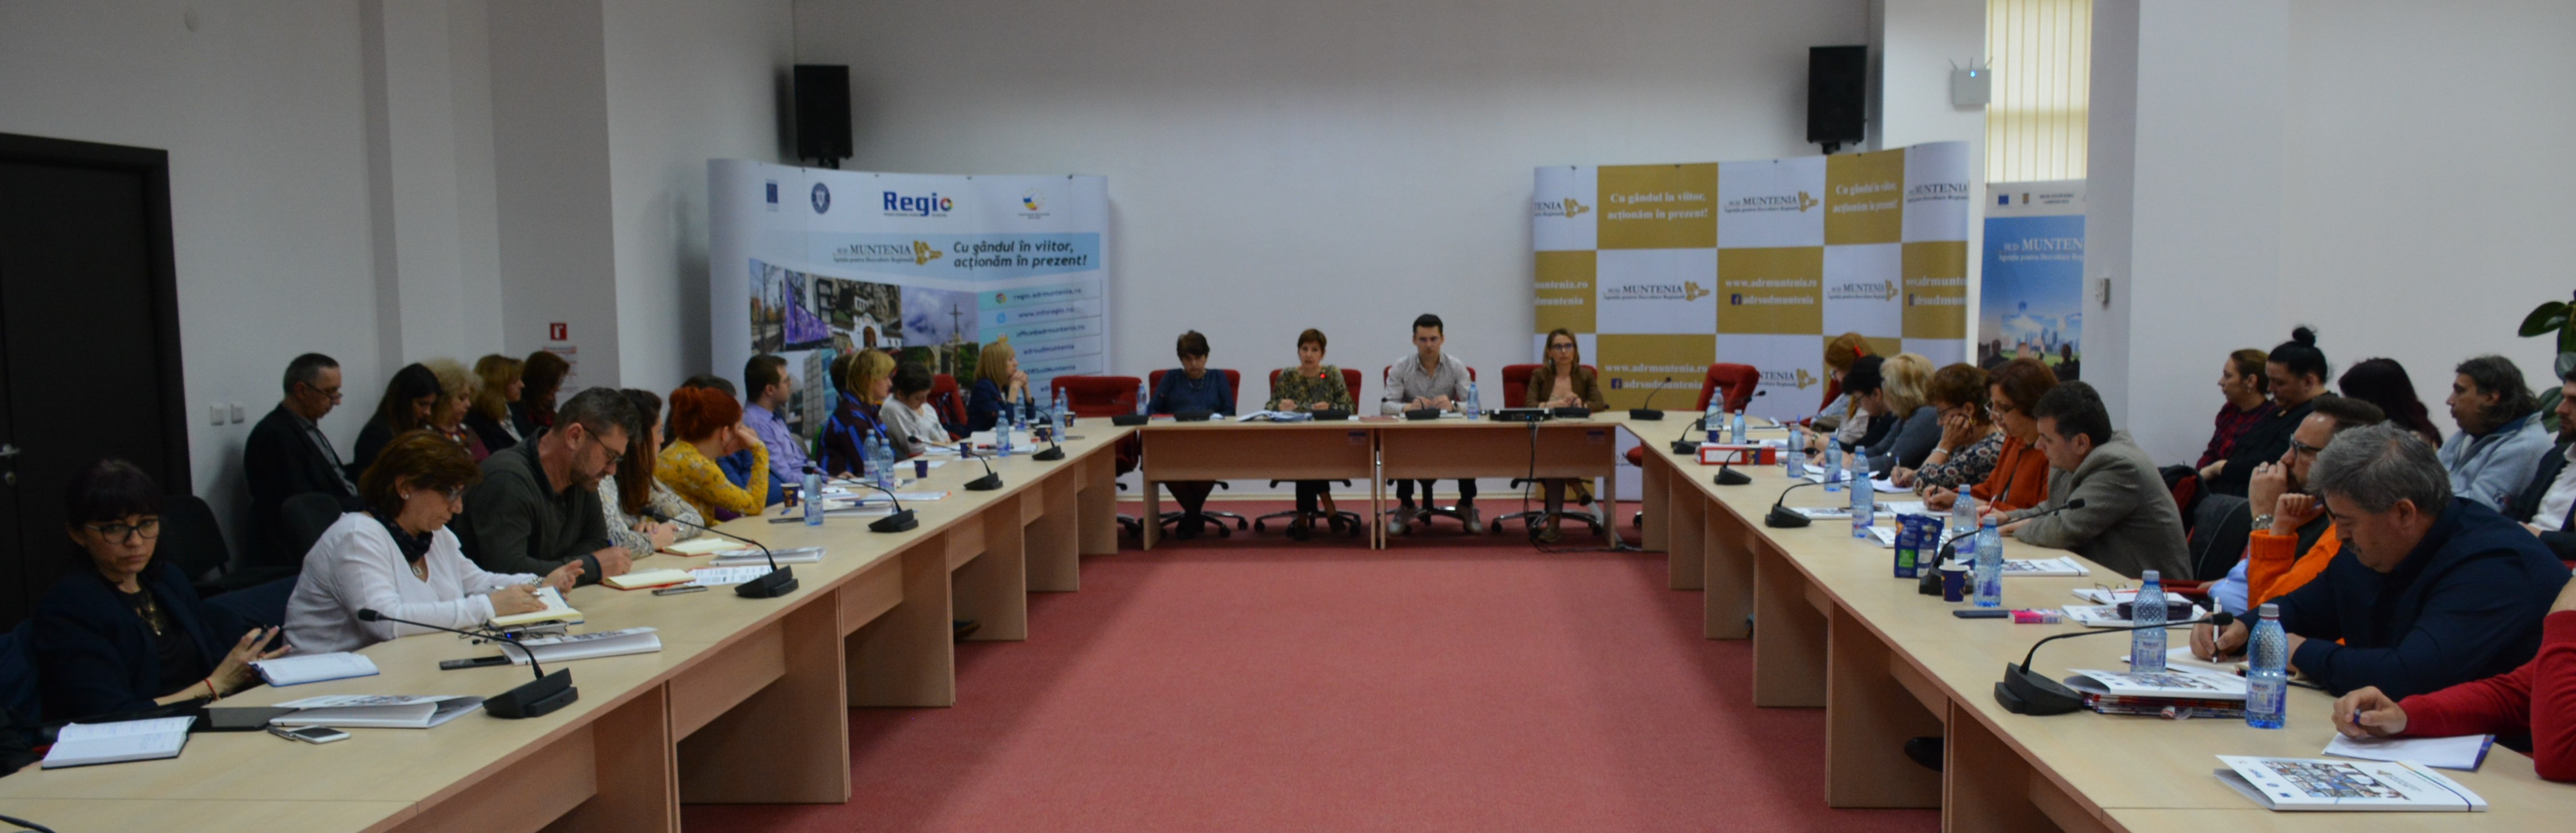 Beneficiarii de fonduri Regio din Sud Muntenia  la o nouă întâlnire de instruire!